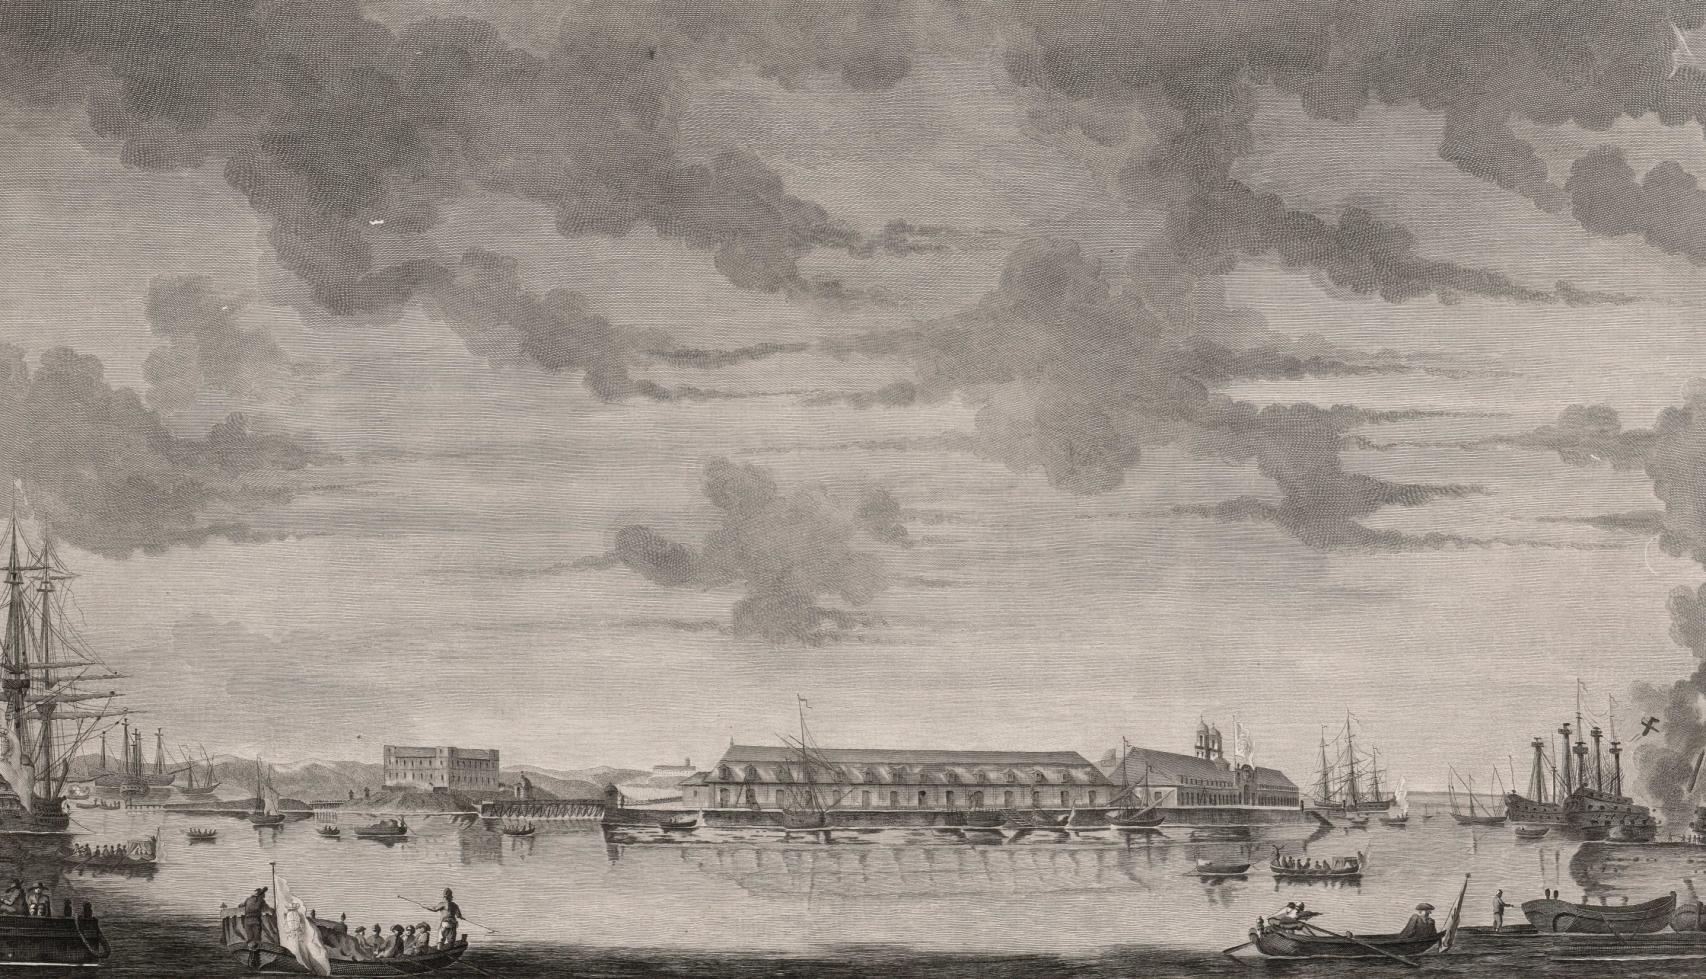 Vista del arsenal de La Carraca desde el mar según un grabado de Simón Brieva. S. XVIII